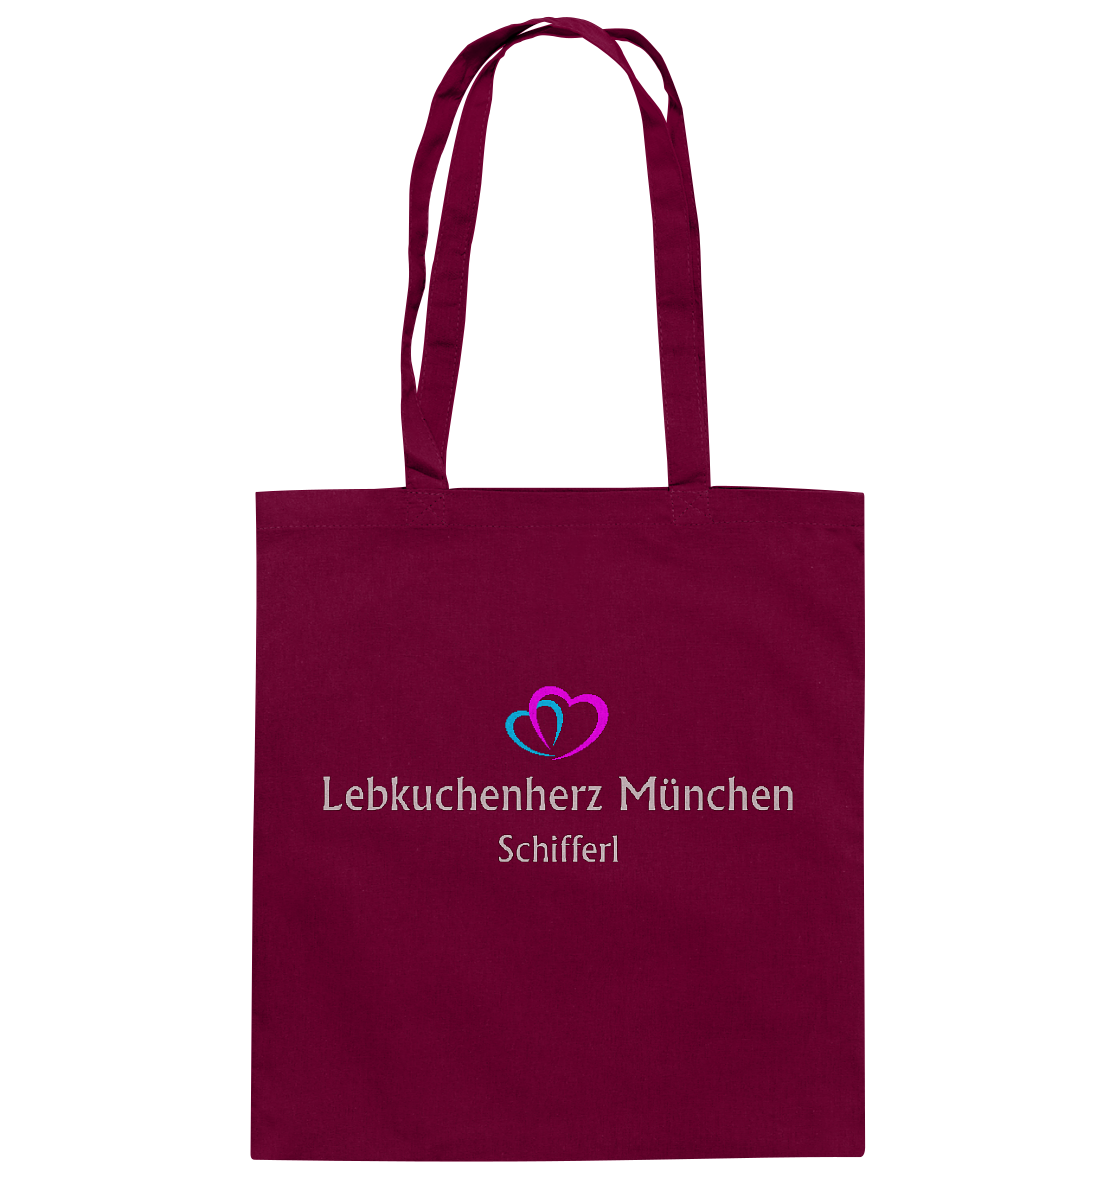 Baumwolltasche mit eigenem Logo 1 - Baumwolltasche - Online Kaufhaus München